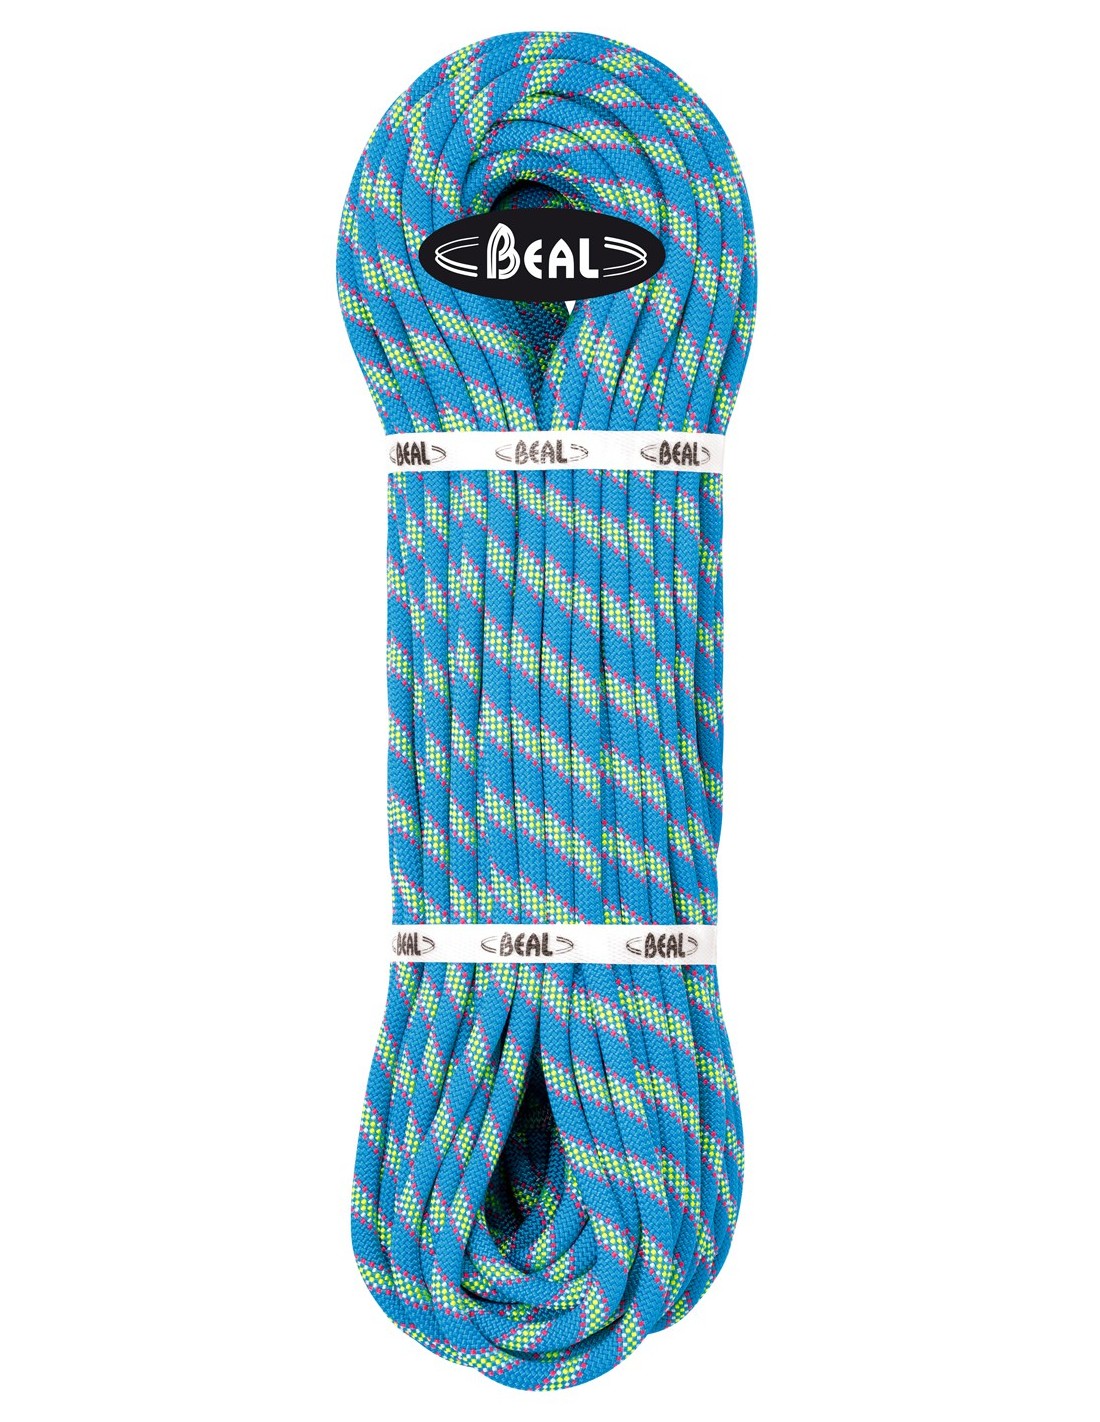 Beal Kletterseil 9,5 Zenith, blue, 80 m Seildurchmesser - 9.1 - 9.5 mm, Seilvariante - Einfachseil, Seilfarbe - Blau, Seillänge - 80 m, von Beal